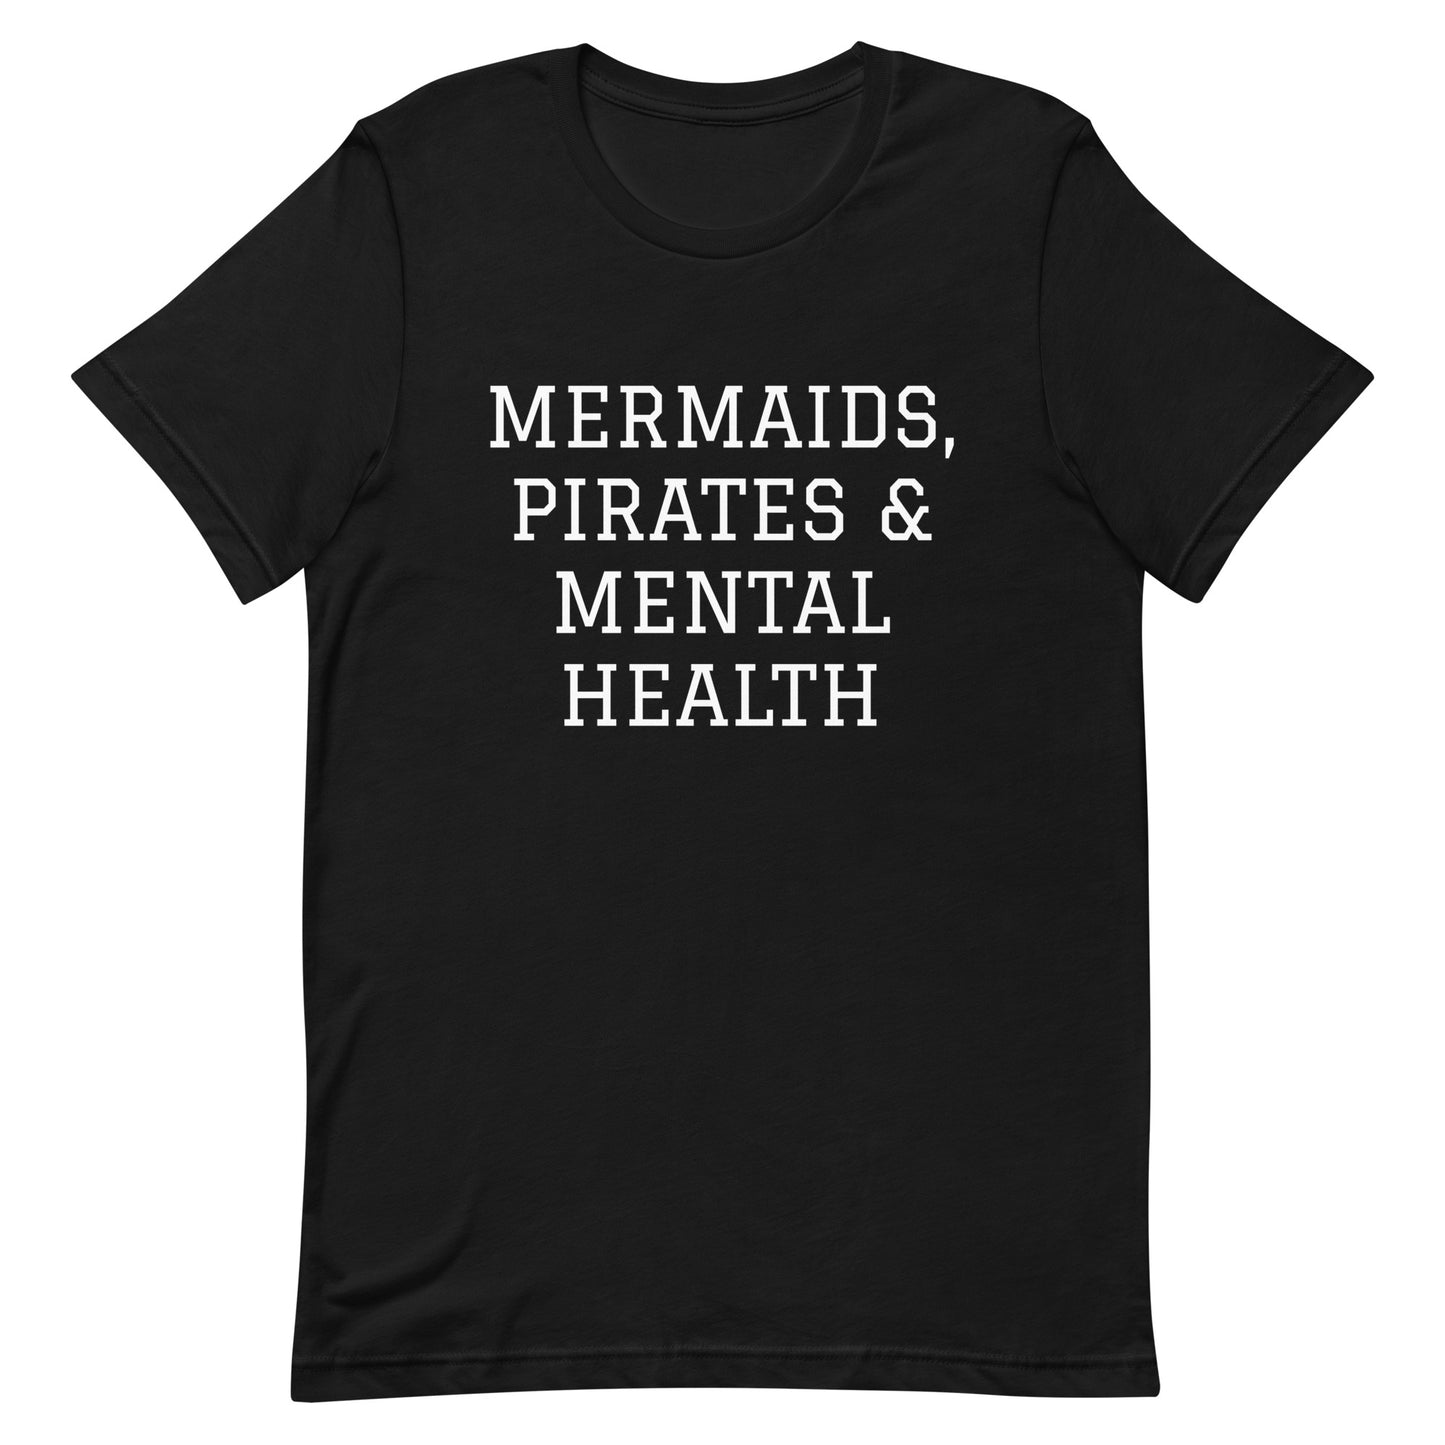 Mermaids, Pirates & Mental Health